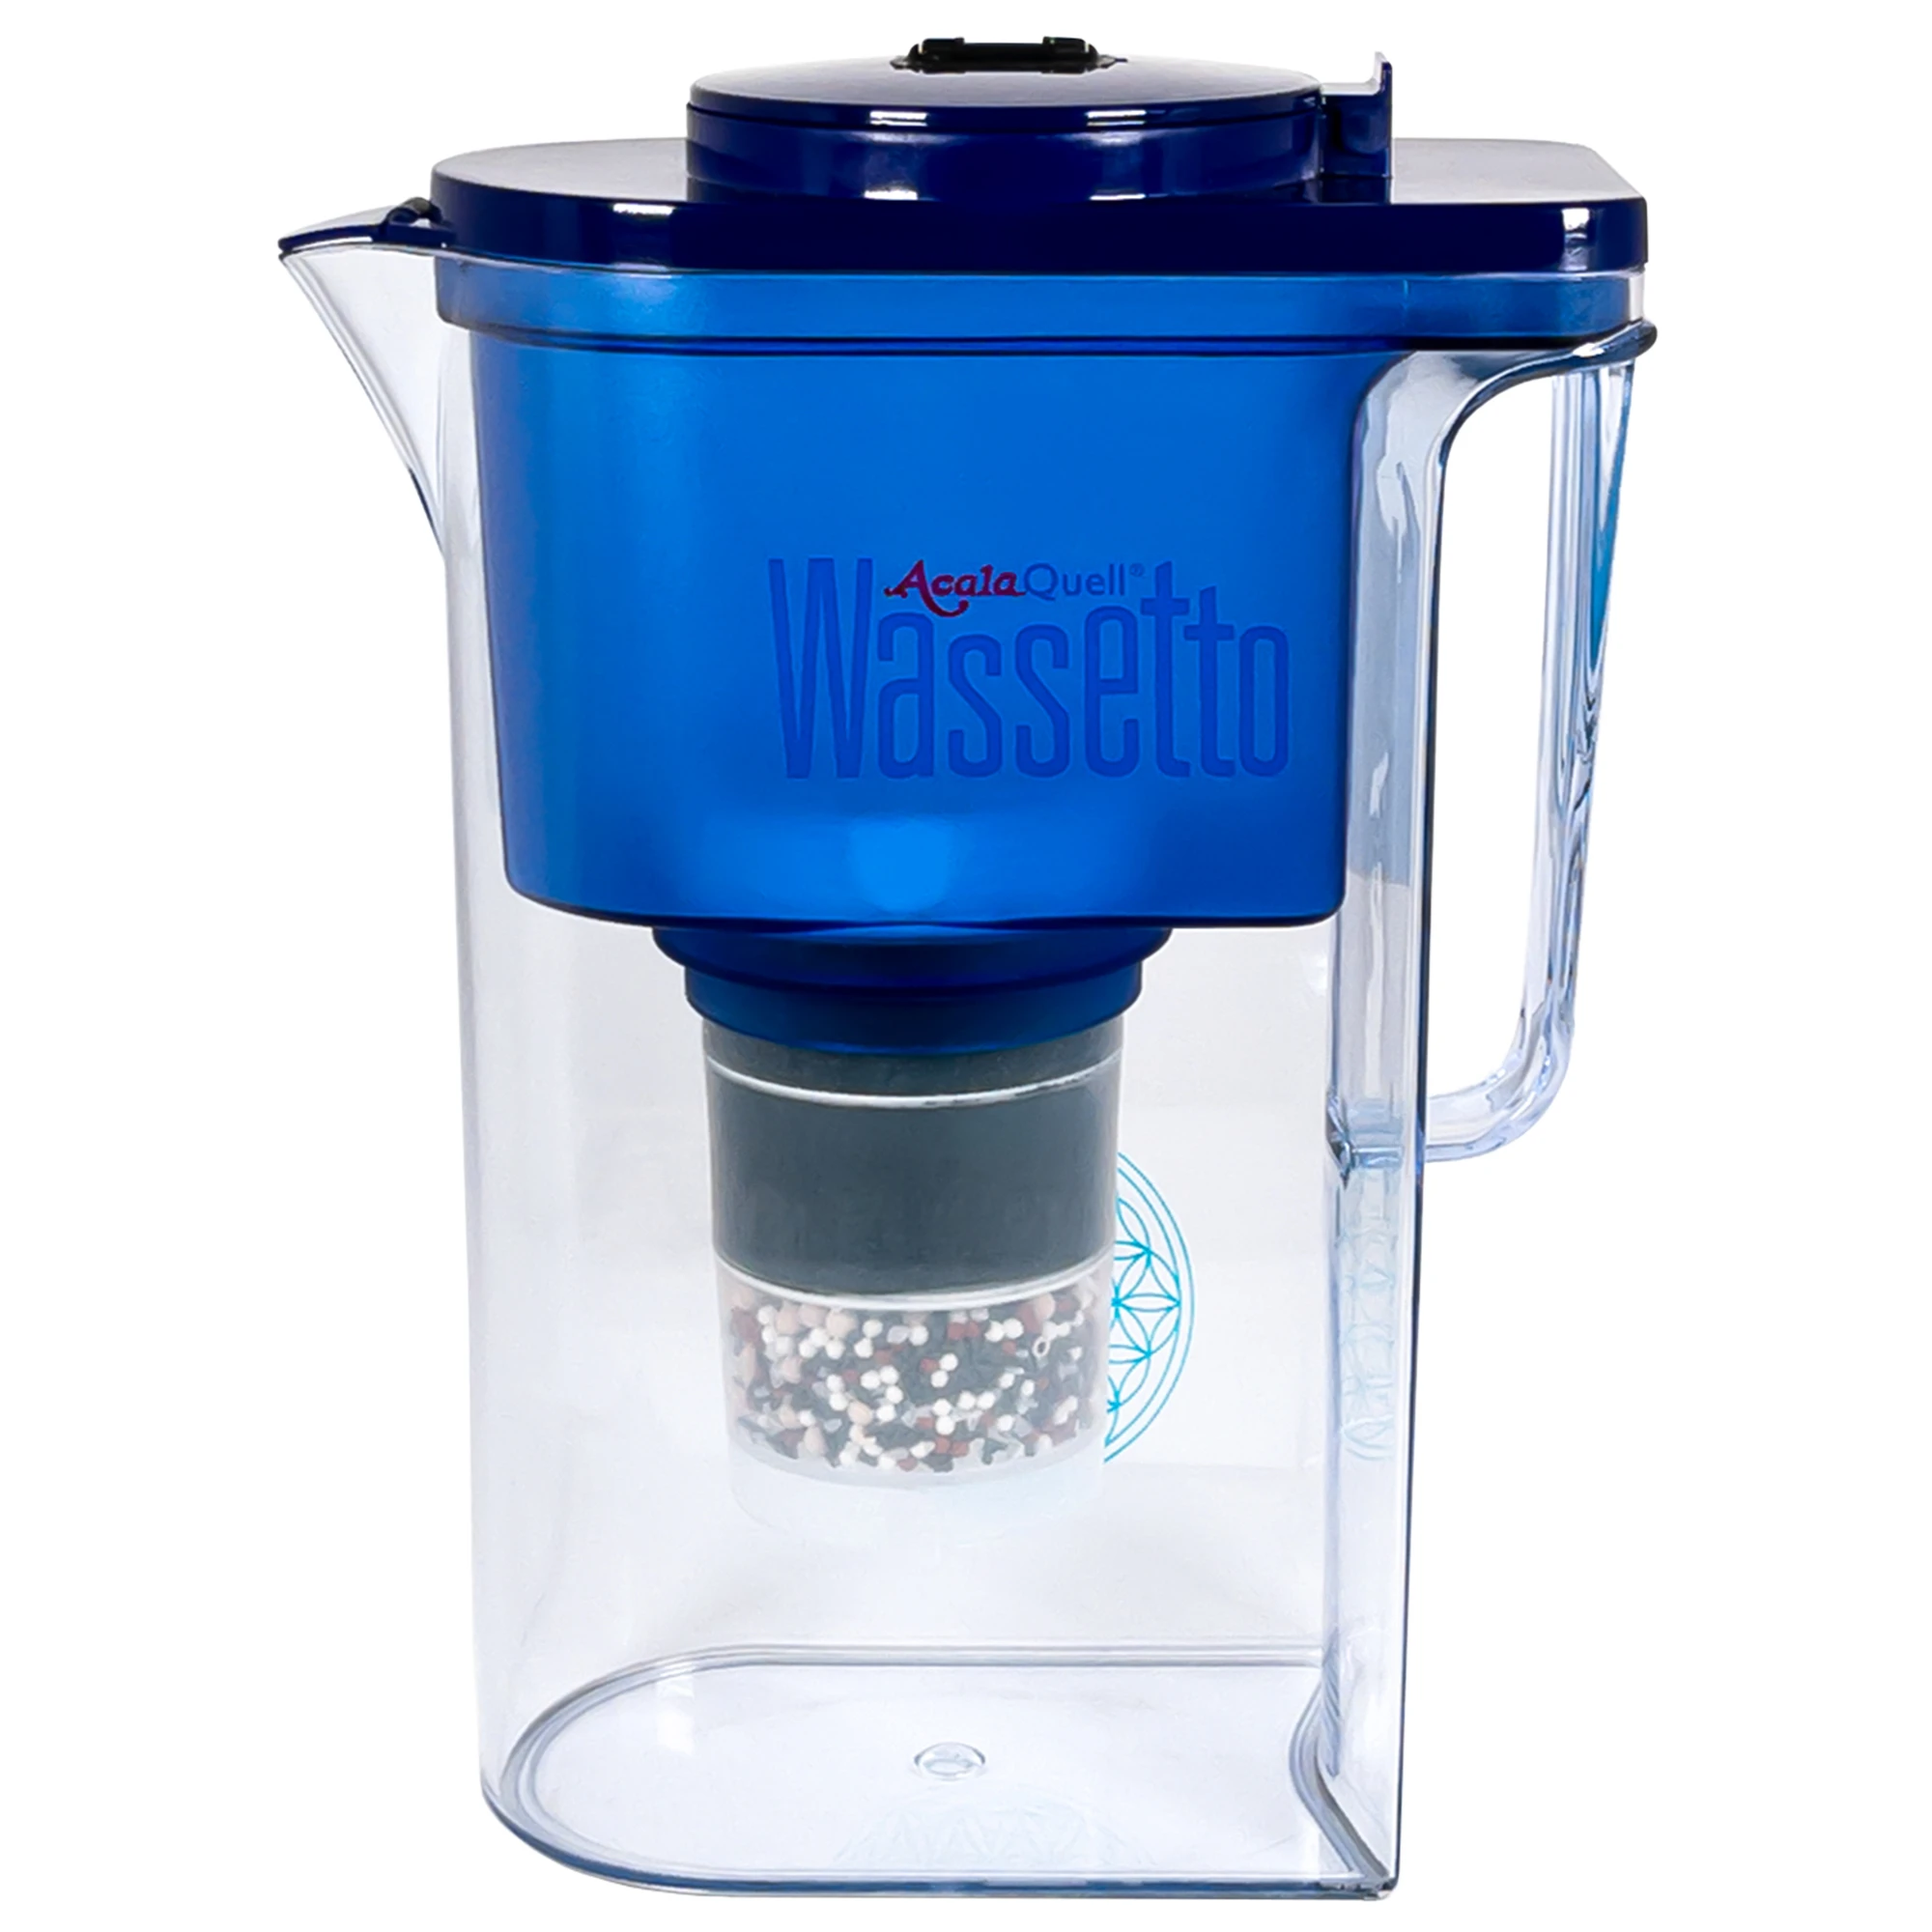 Zu sehen ist der Acala Wassetto Kannen Wasserfilter inklusive einer Filterkartusche und einem Mikroschwamm mit Deckel in dunkelblau vor weißem Hintergrund. Man schaut frontal auf den Filter und sieht den Aufdruck AcalaQuell Wassetto.